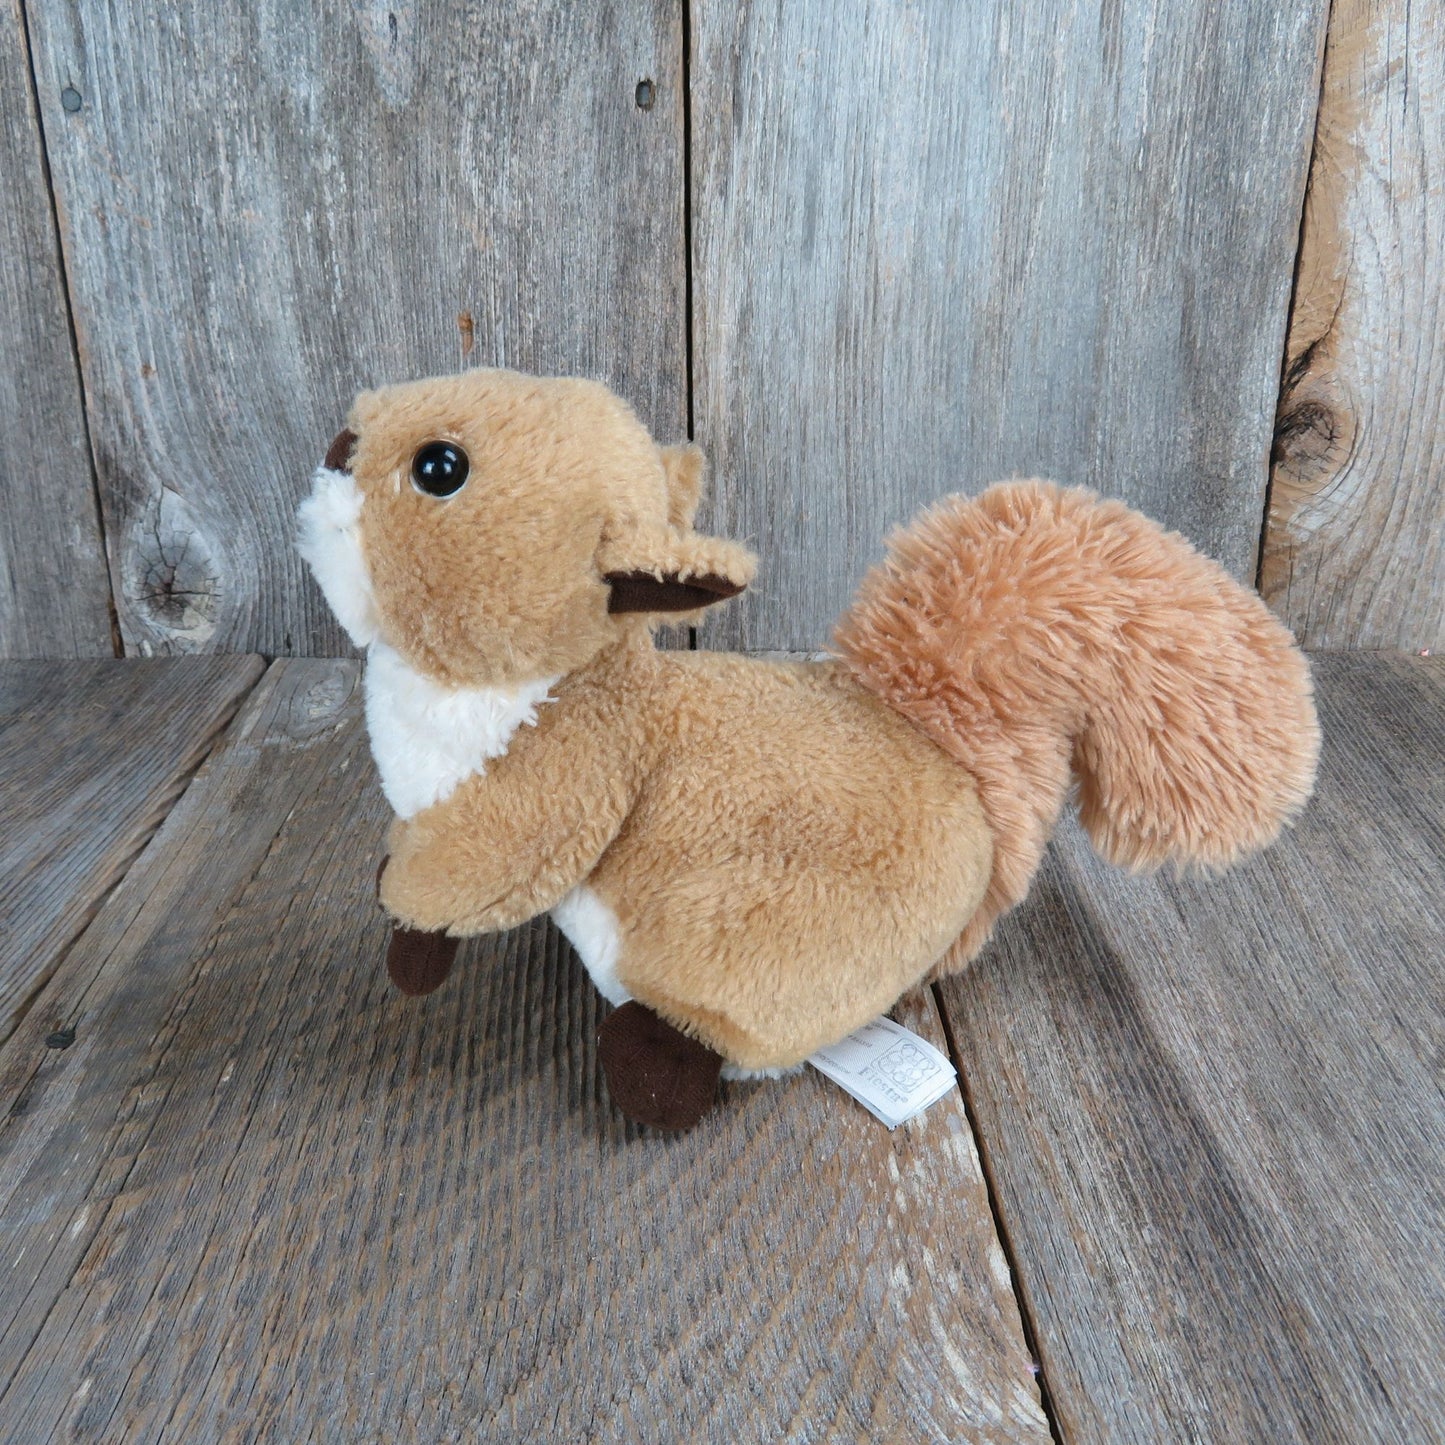 Squirrel Stuffed Animal Fiesta Plush Chipmunk Tan Brown Paws White Belly